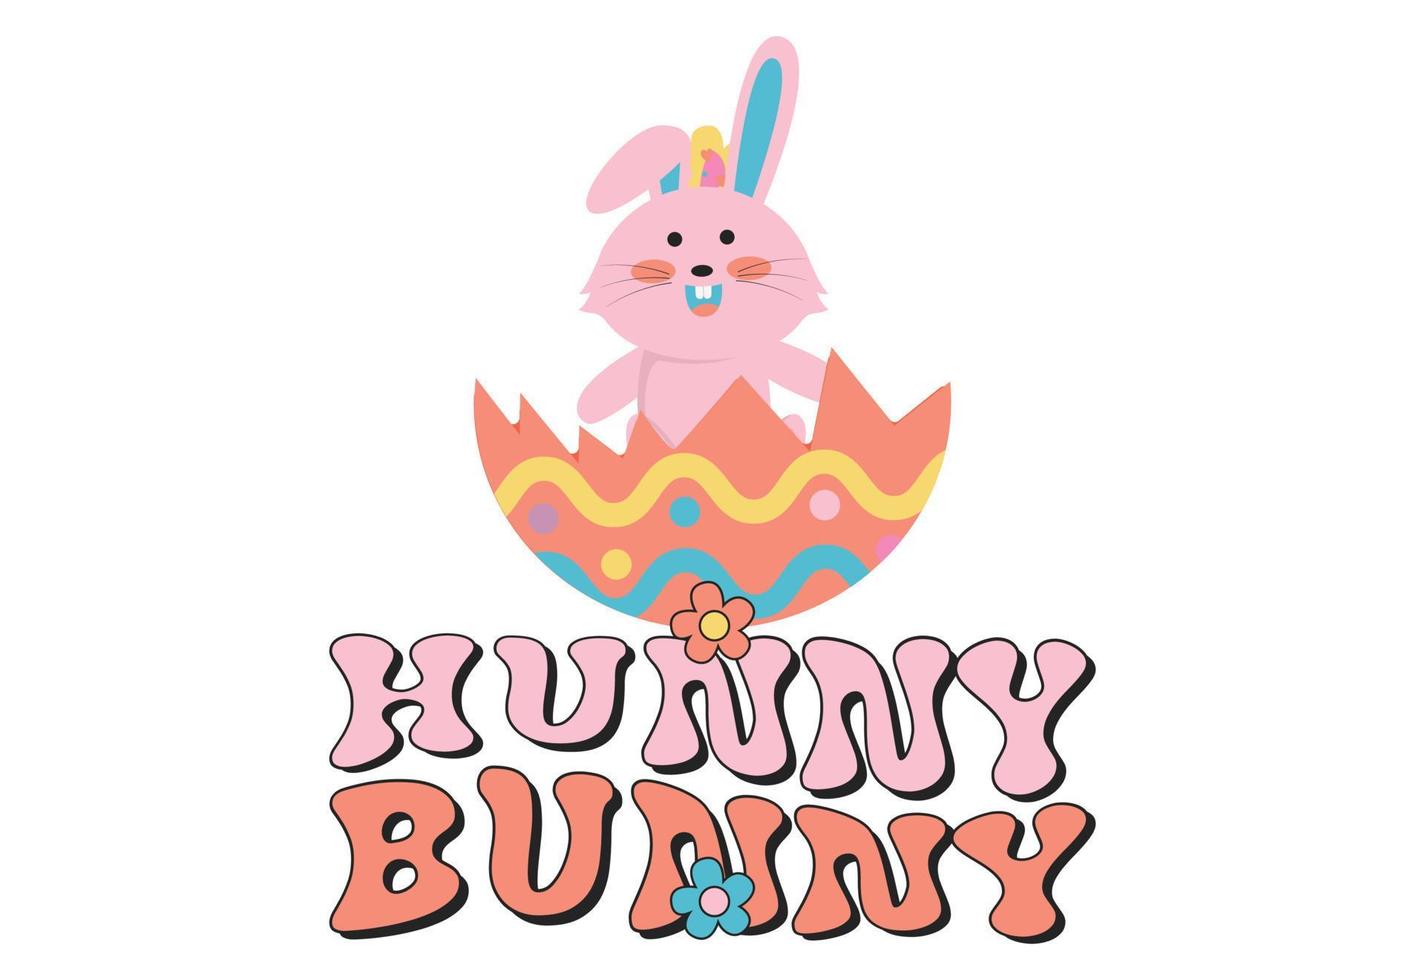 Hunny Bunny, Happy Easter Bunny vector